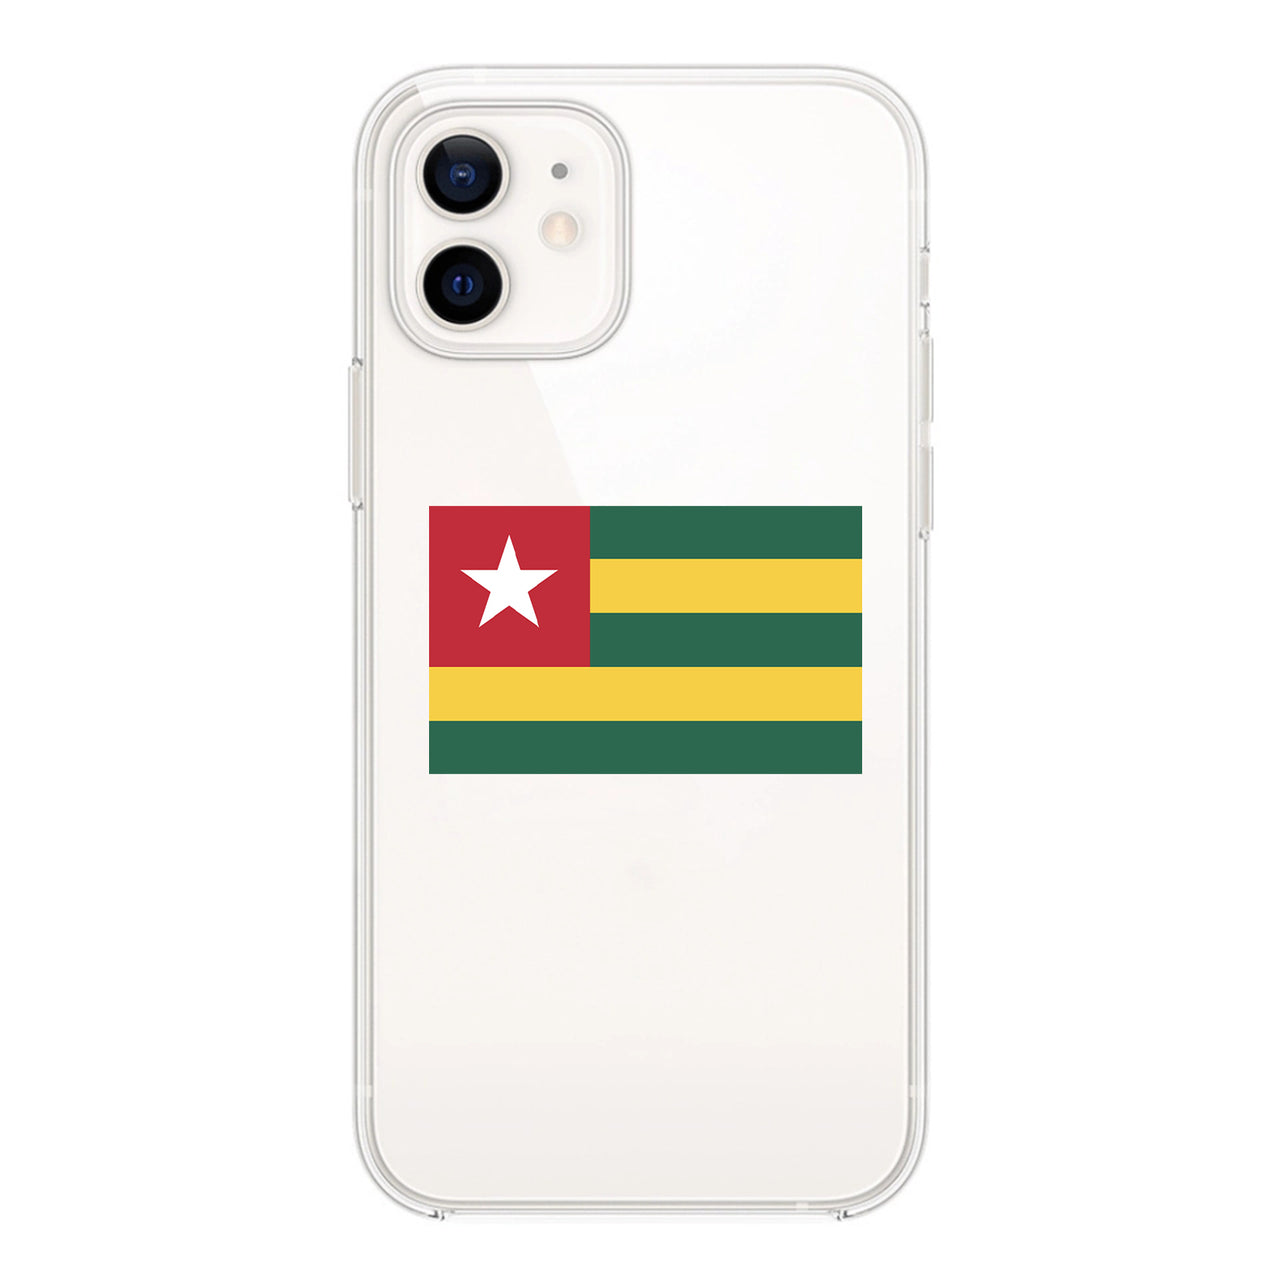 Togo Designed Transparent Silicone iPhone Cases